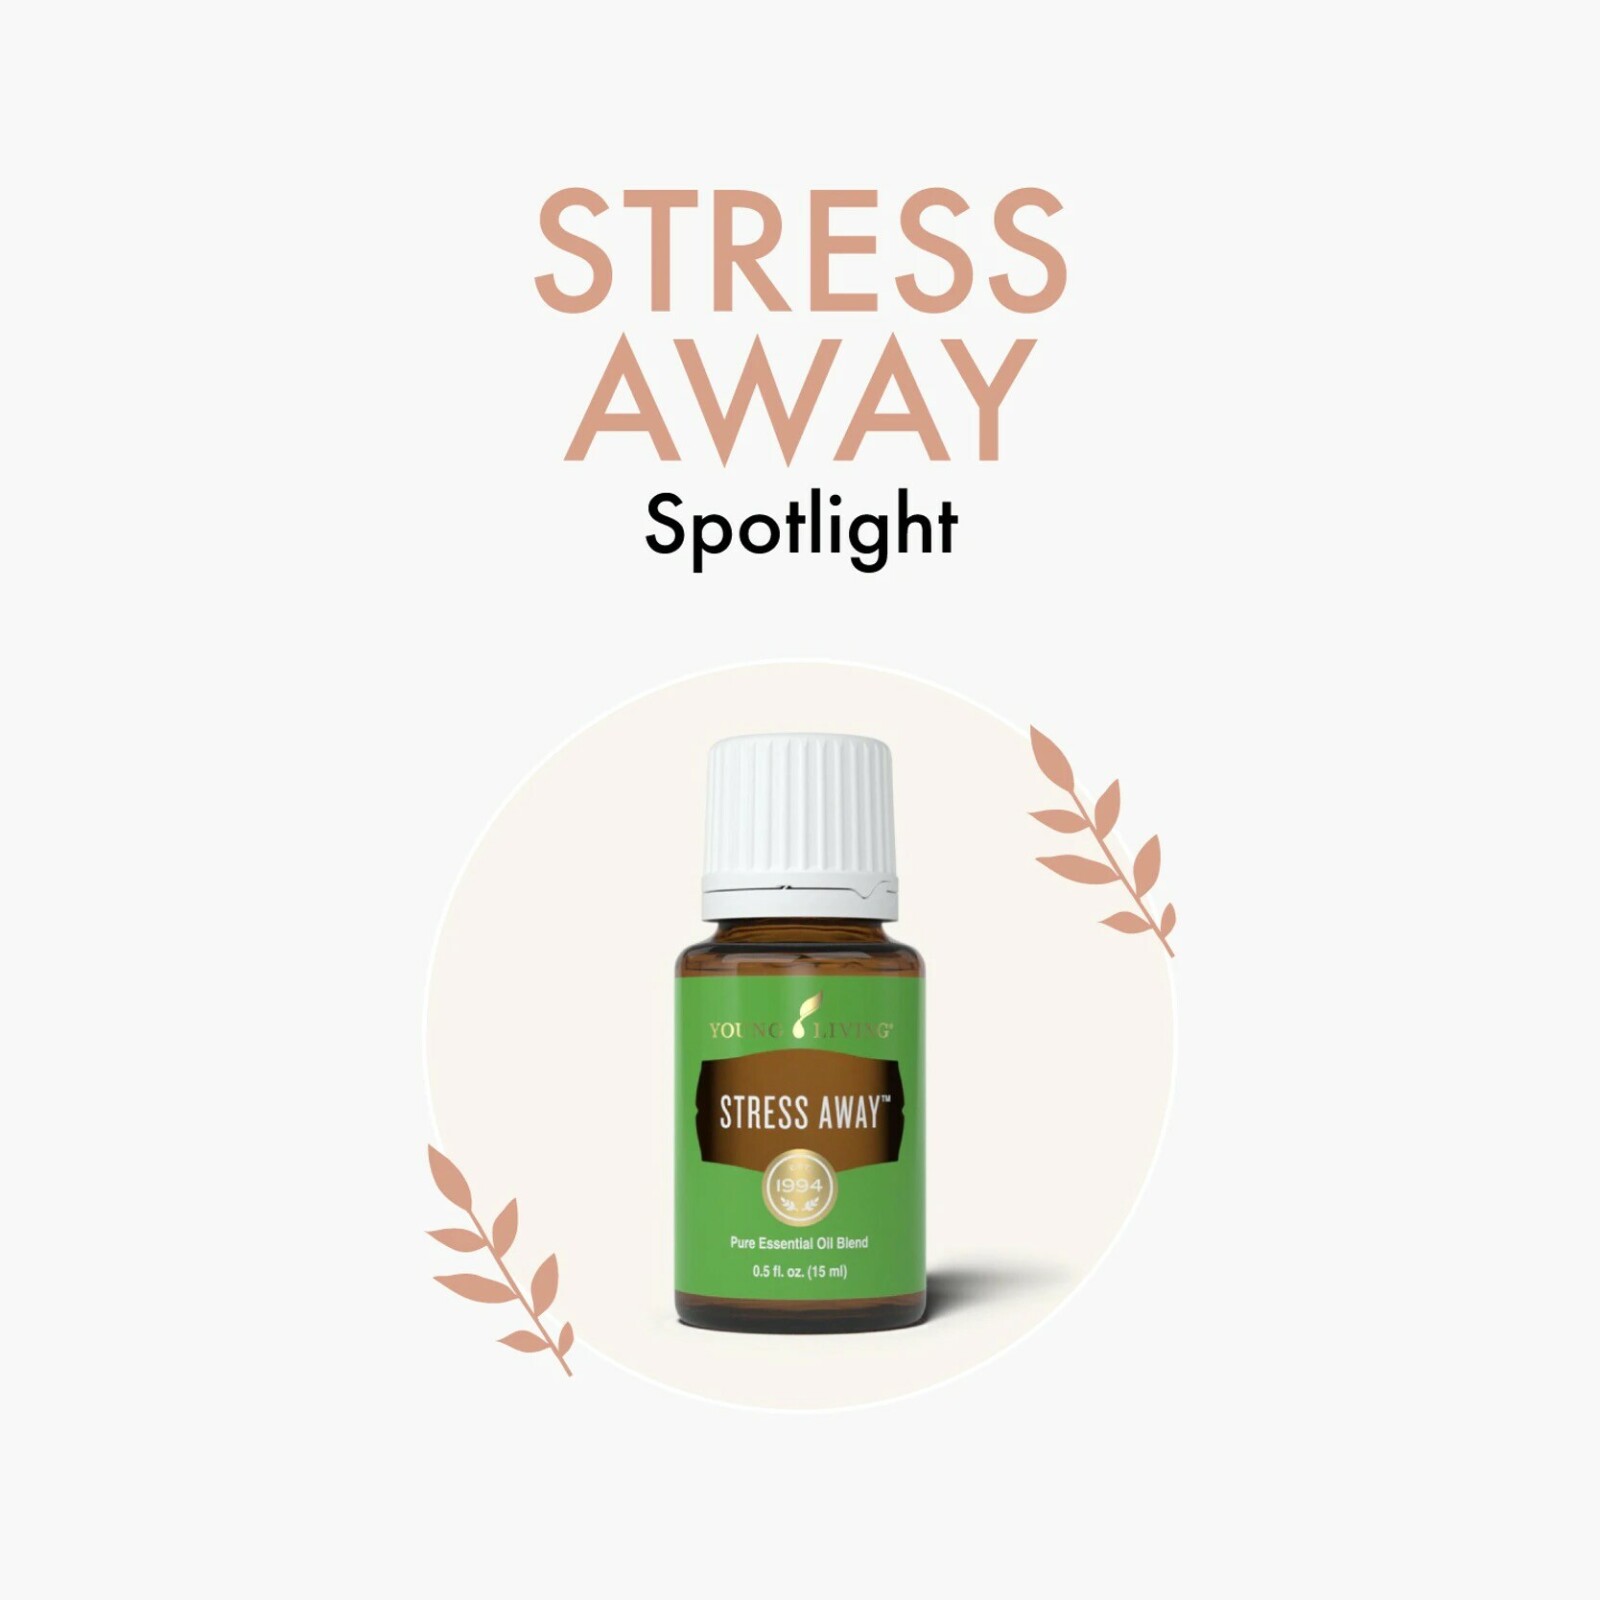 Stress Away Spotlight